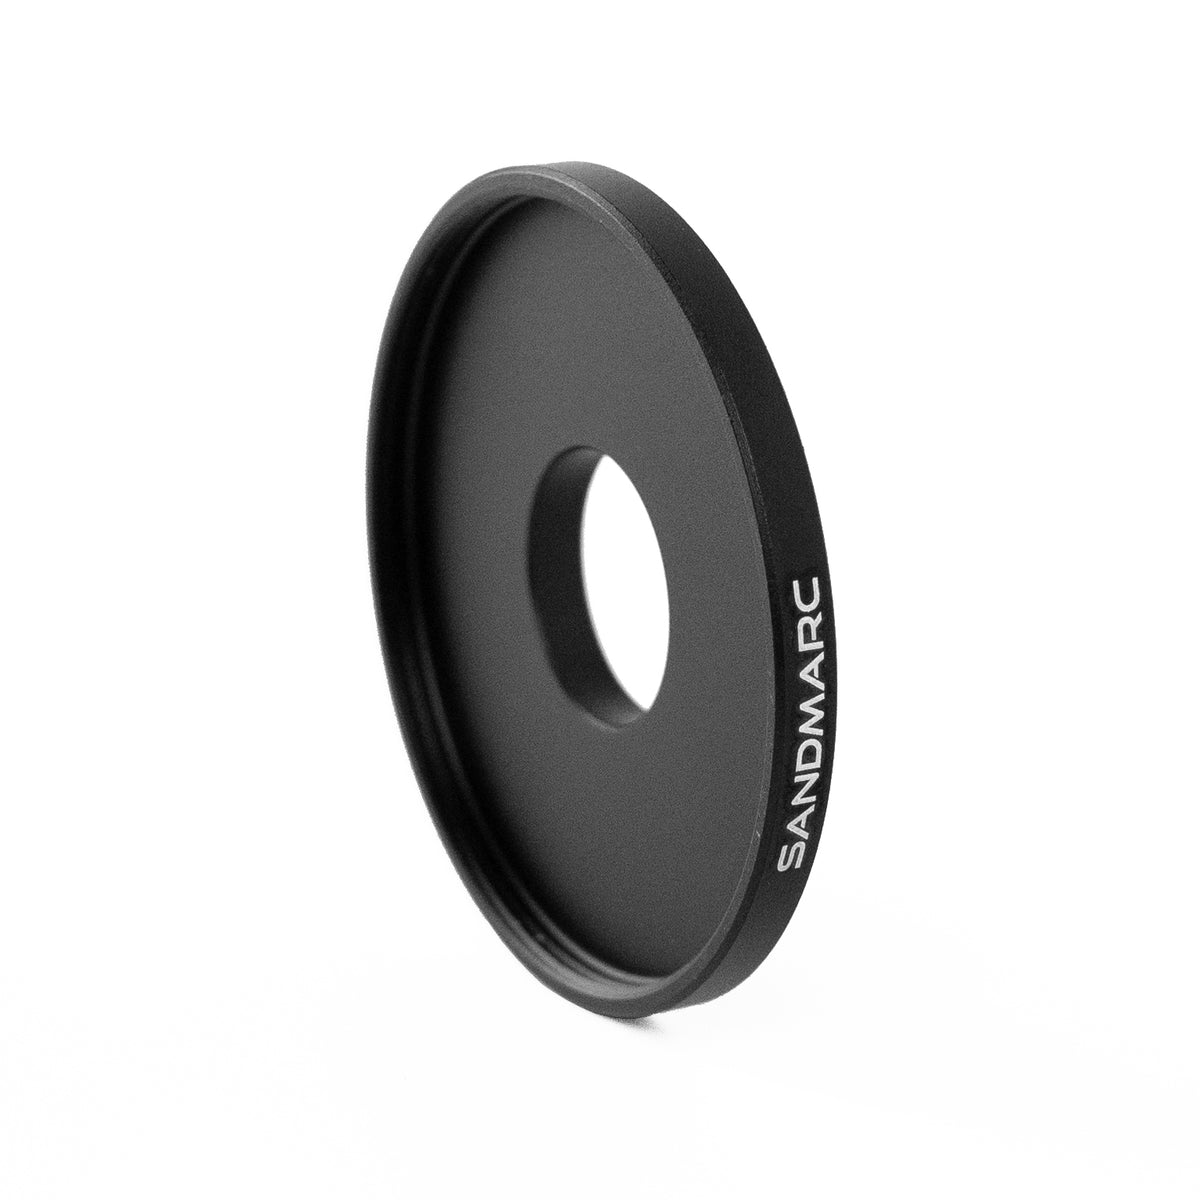 Step-Up Ring - Filter Case Mount (40.6mm)